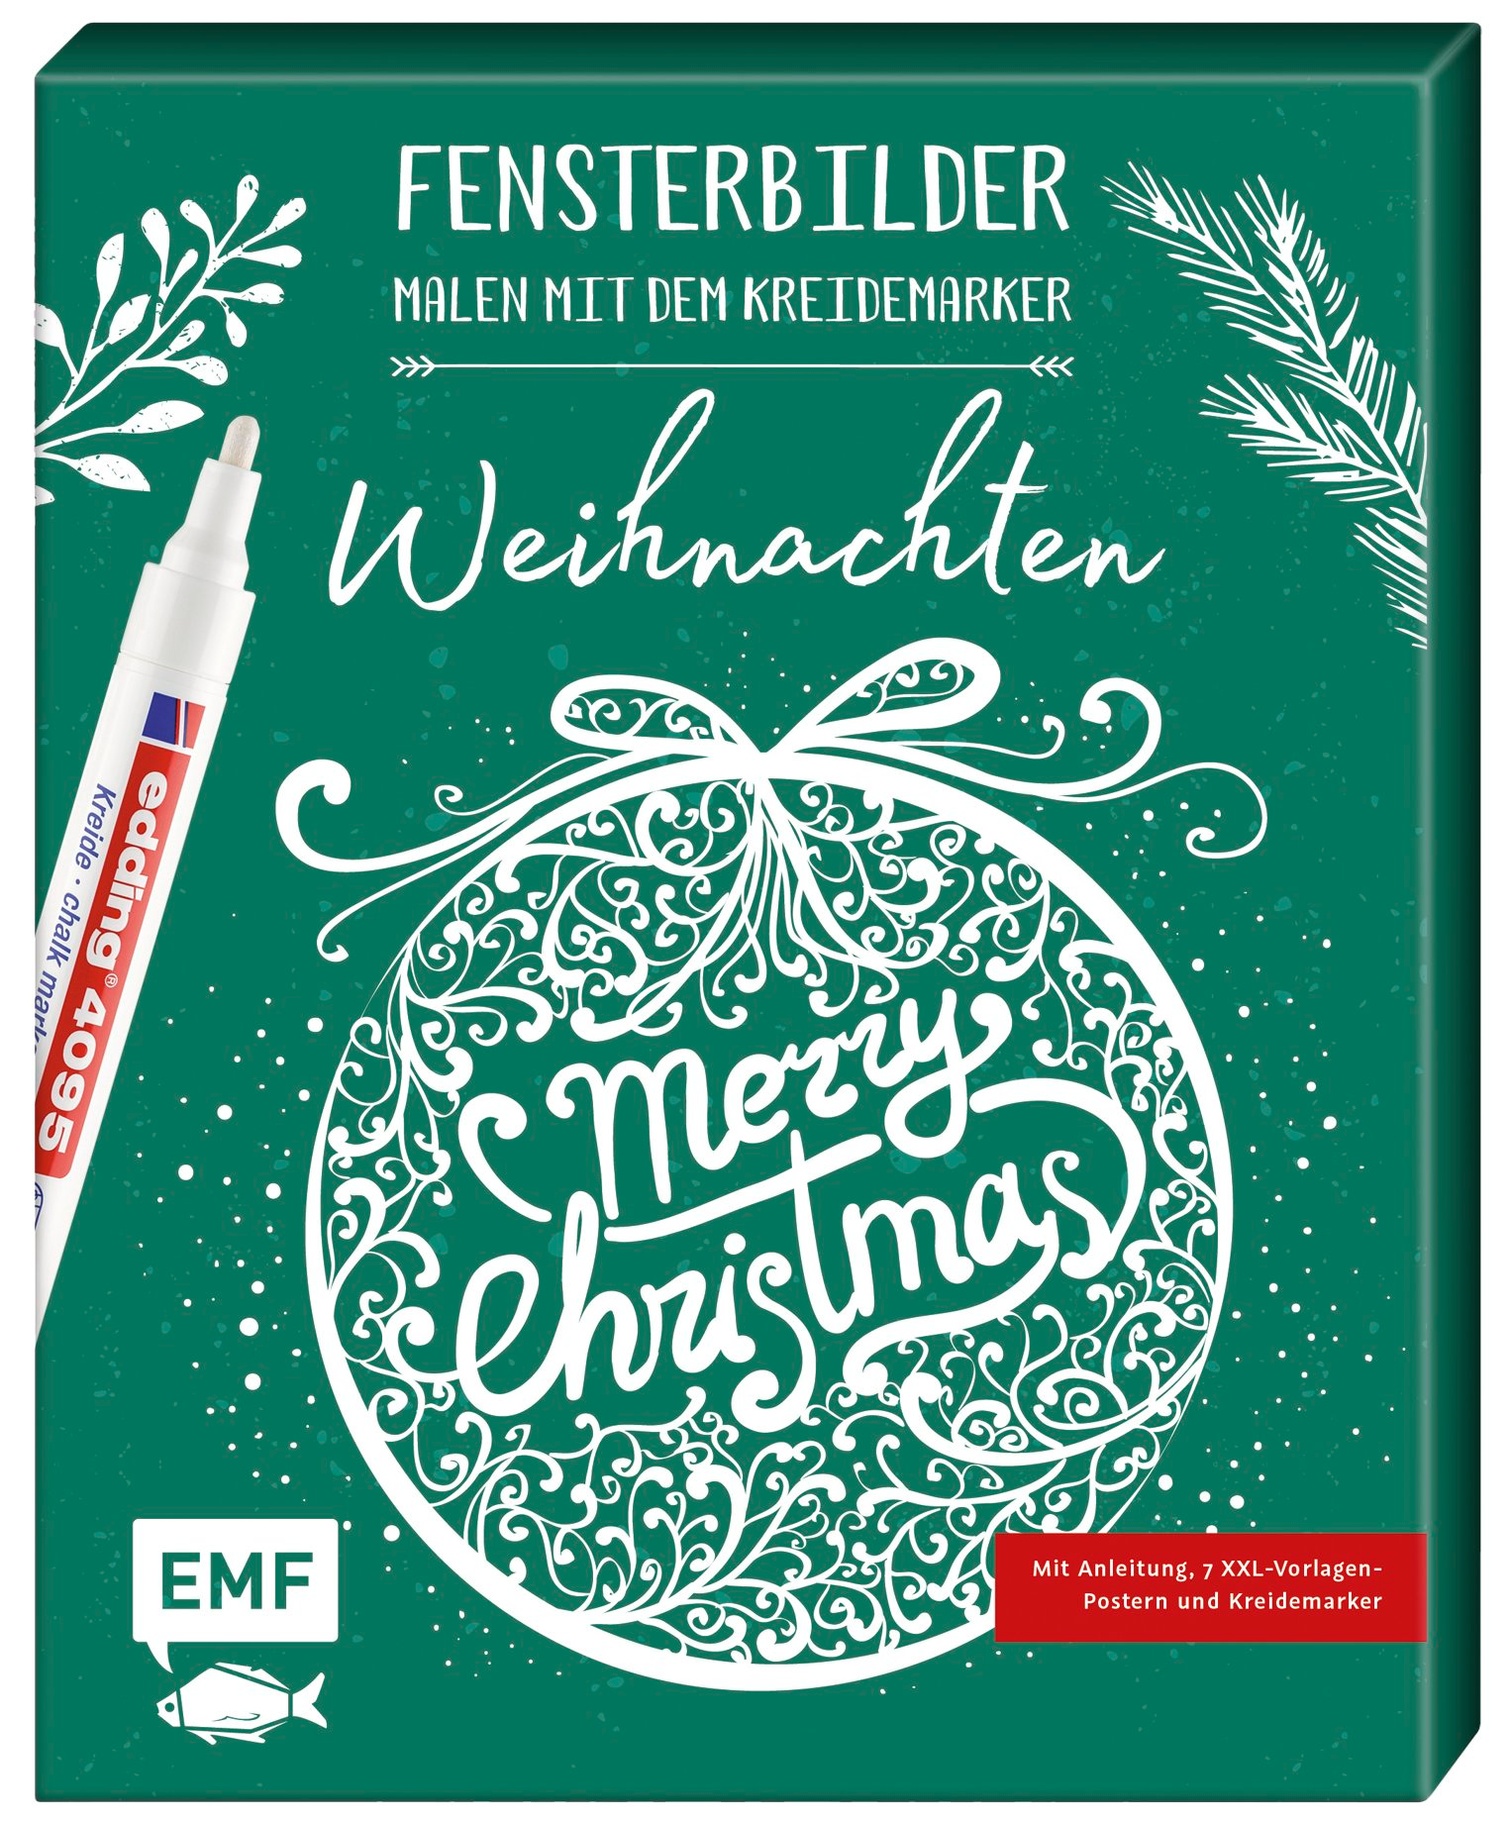 Fensterbilder malen mit dem Kreidemarker - Weihnachten - Merry Christmas  Buch jetzt online bei Weltbild.at bestellen